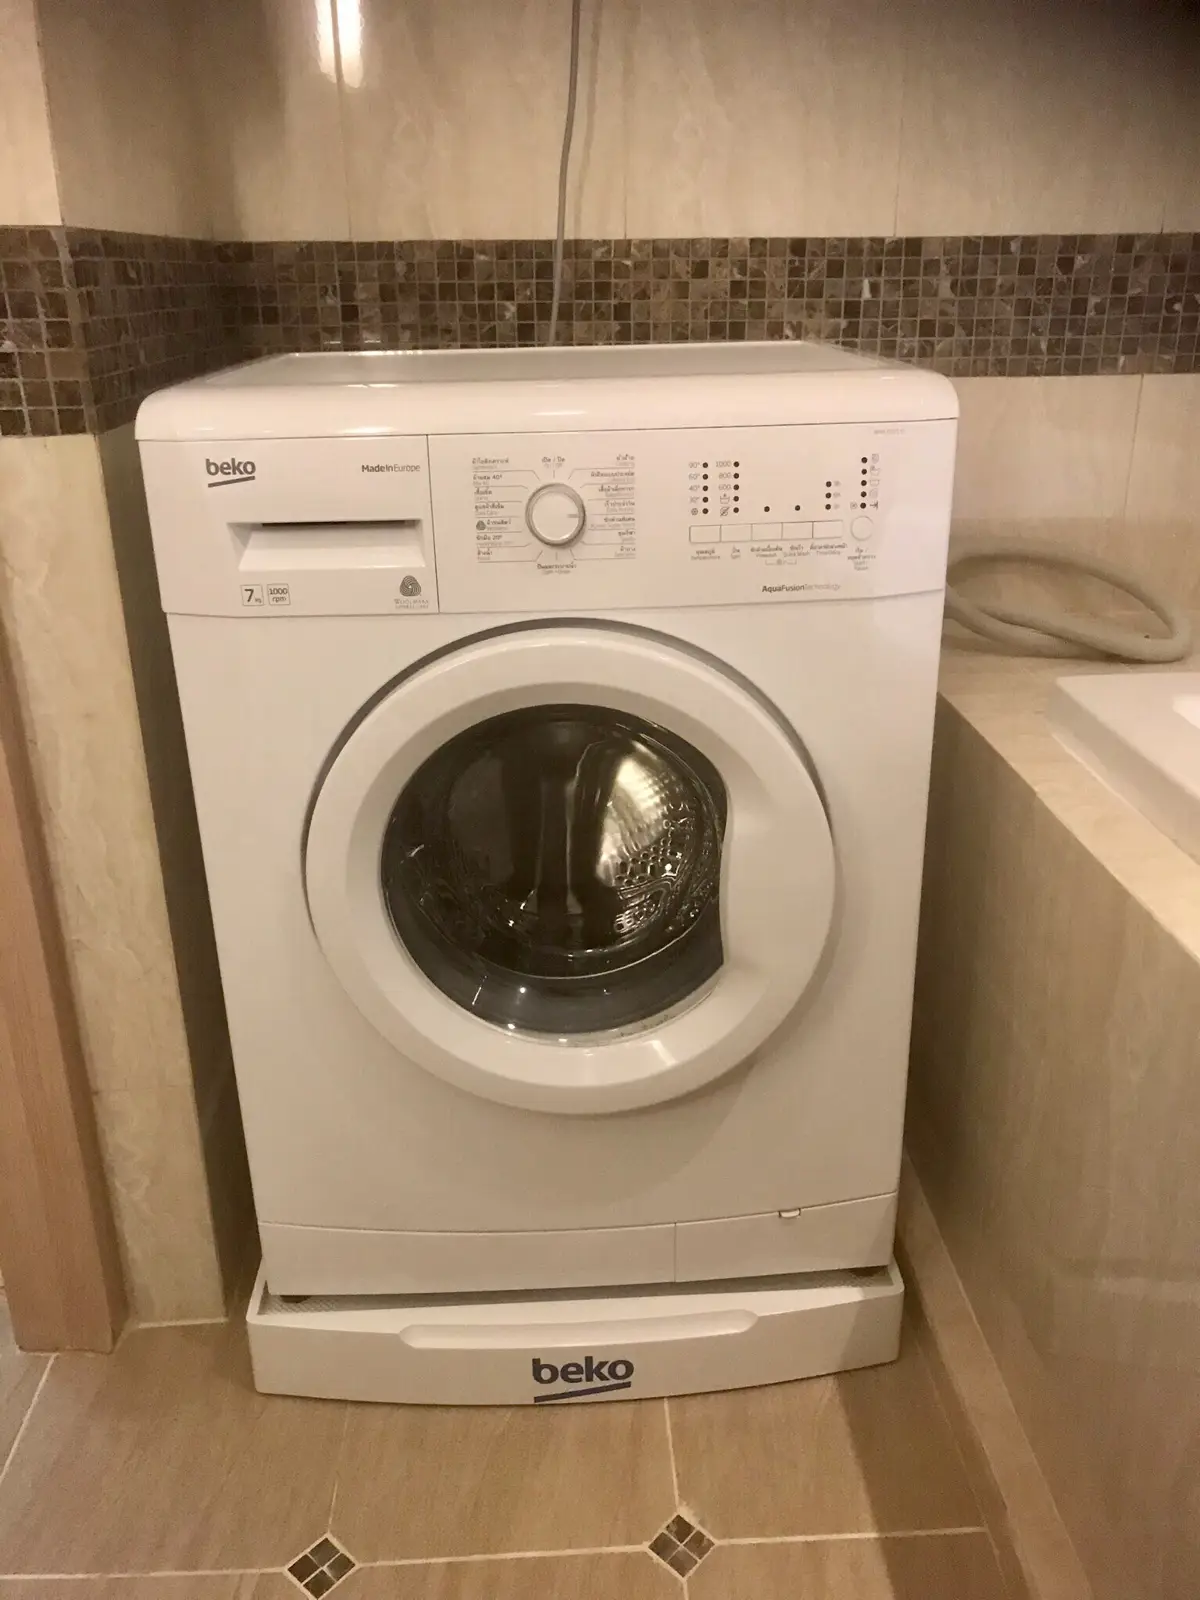 Washing machine